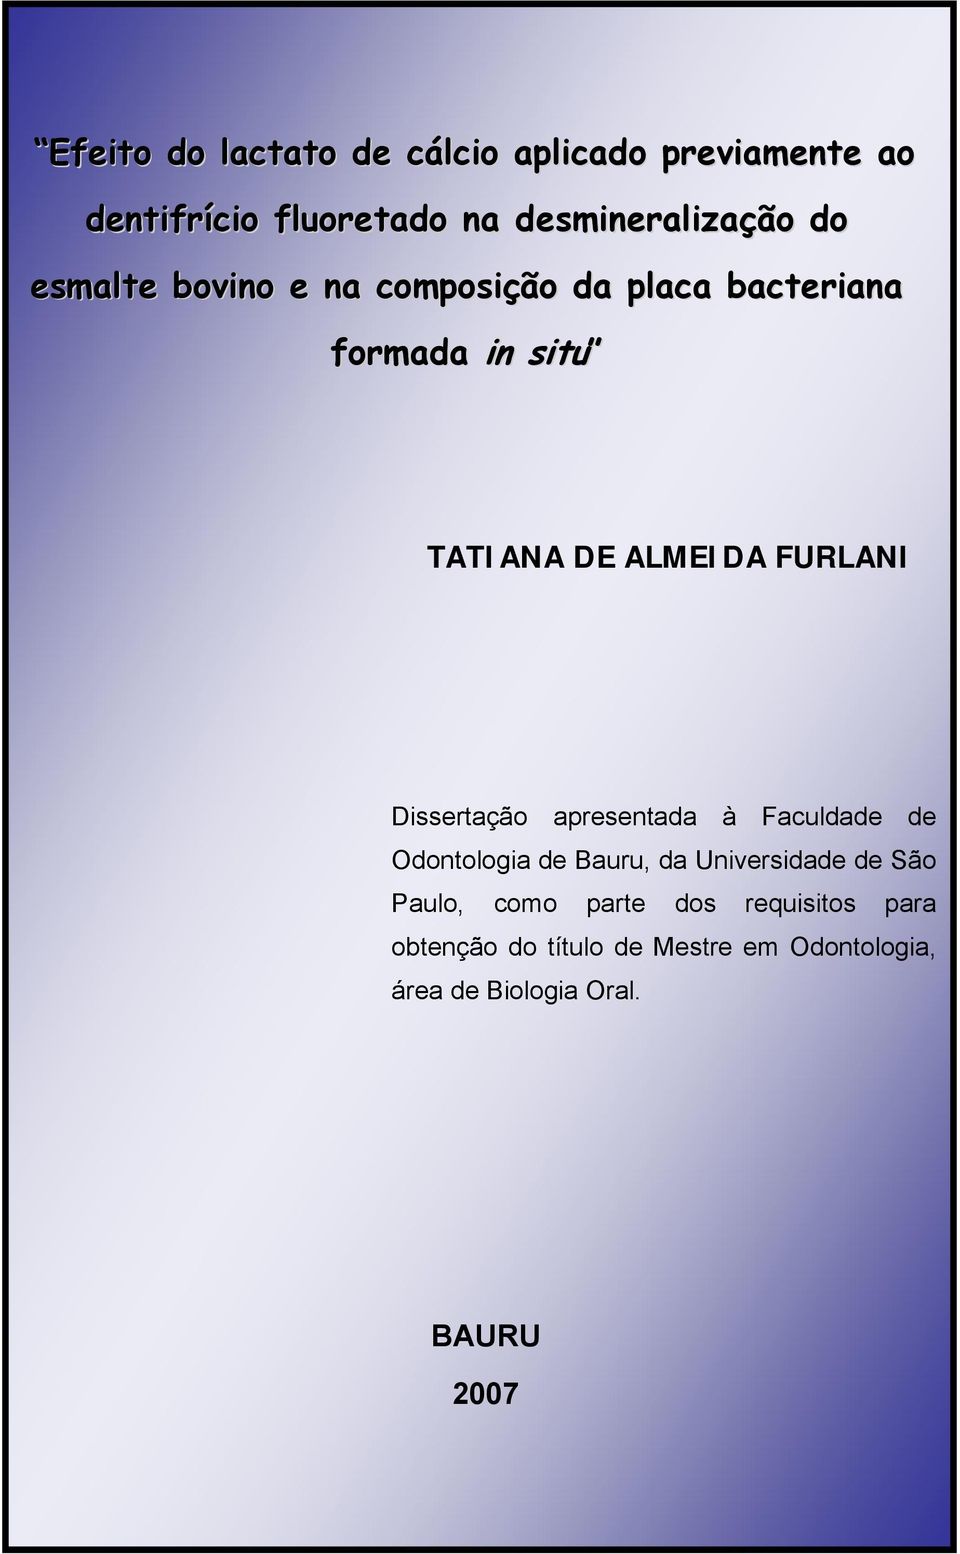 Dissertação apresentada à Faculdade de Odontologia de Bauru, da Universidade de São Paulo, como